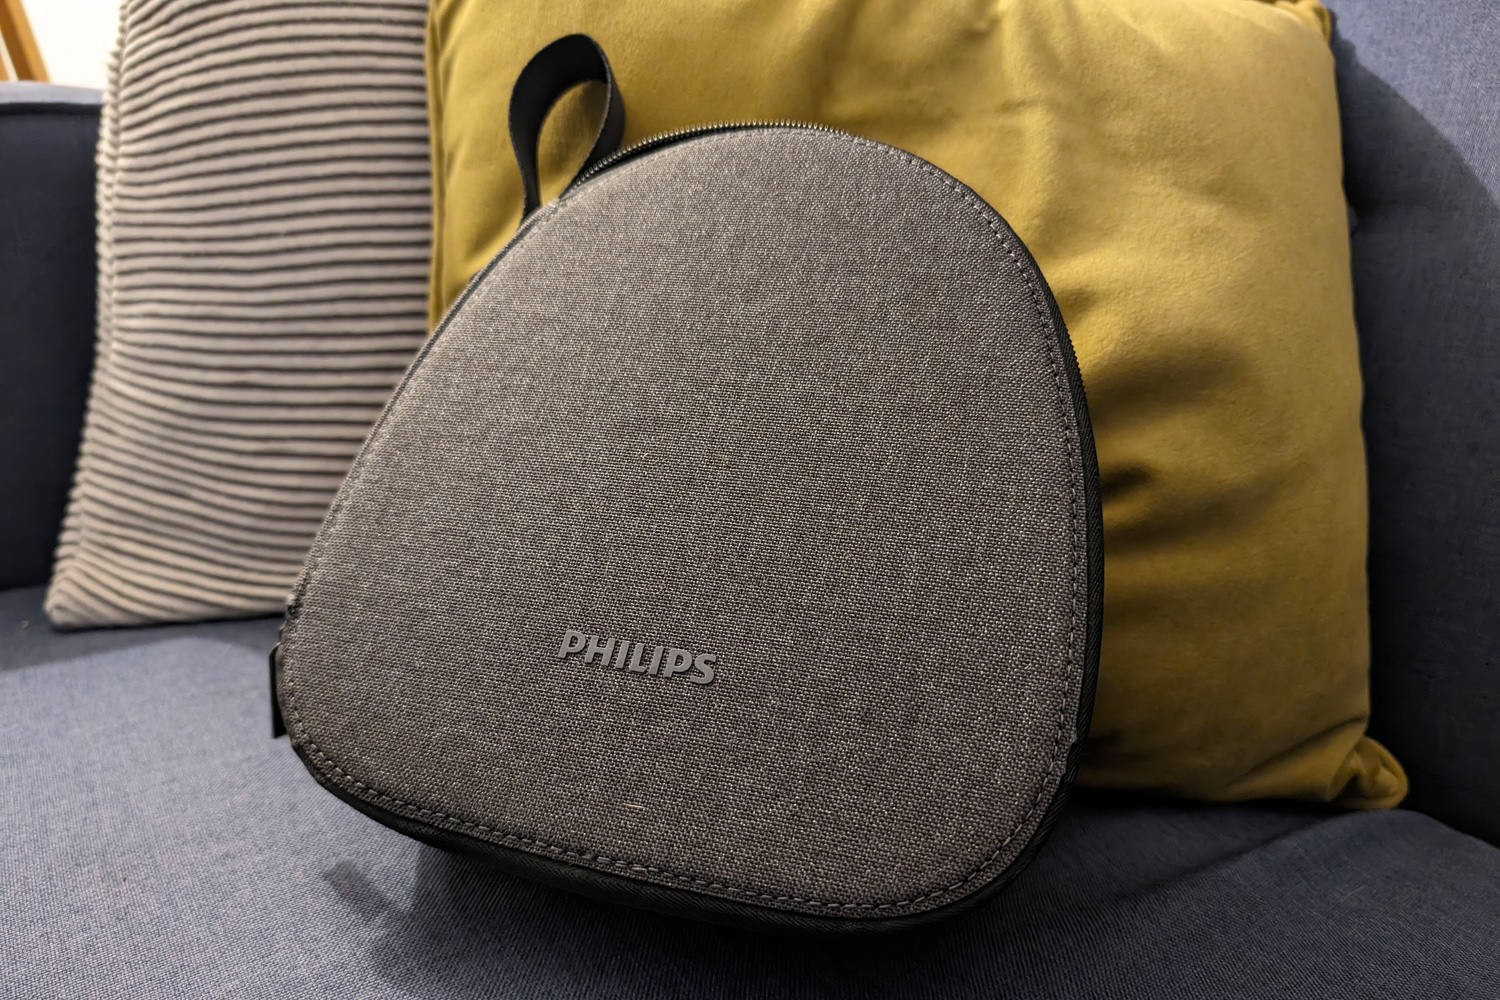 Philips Fidelio L4 review case